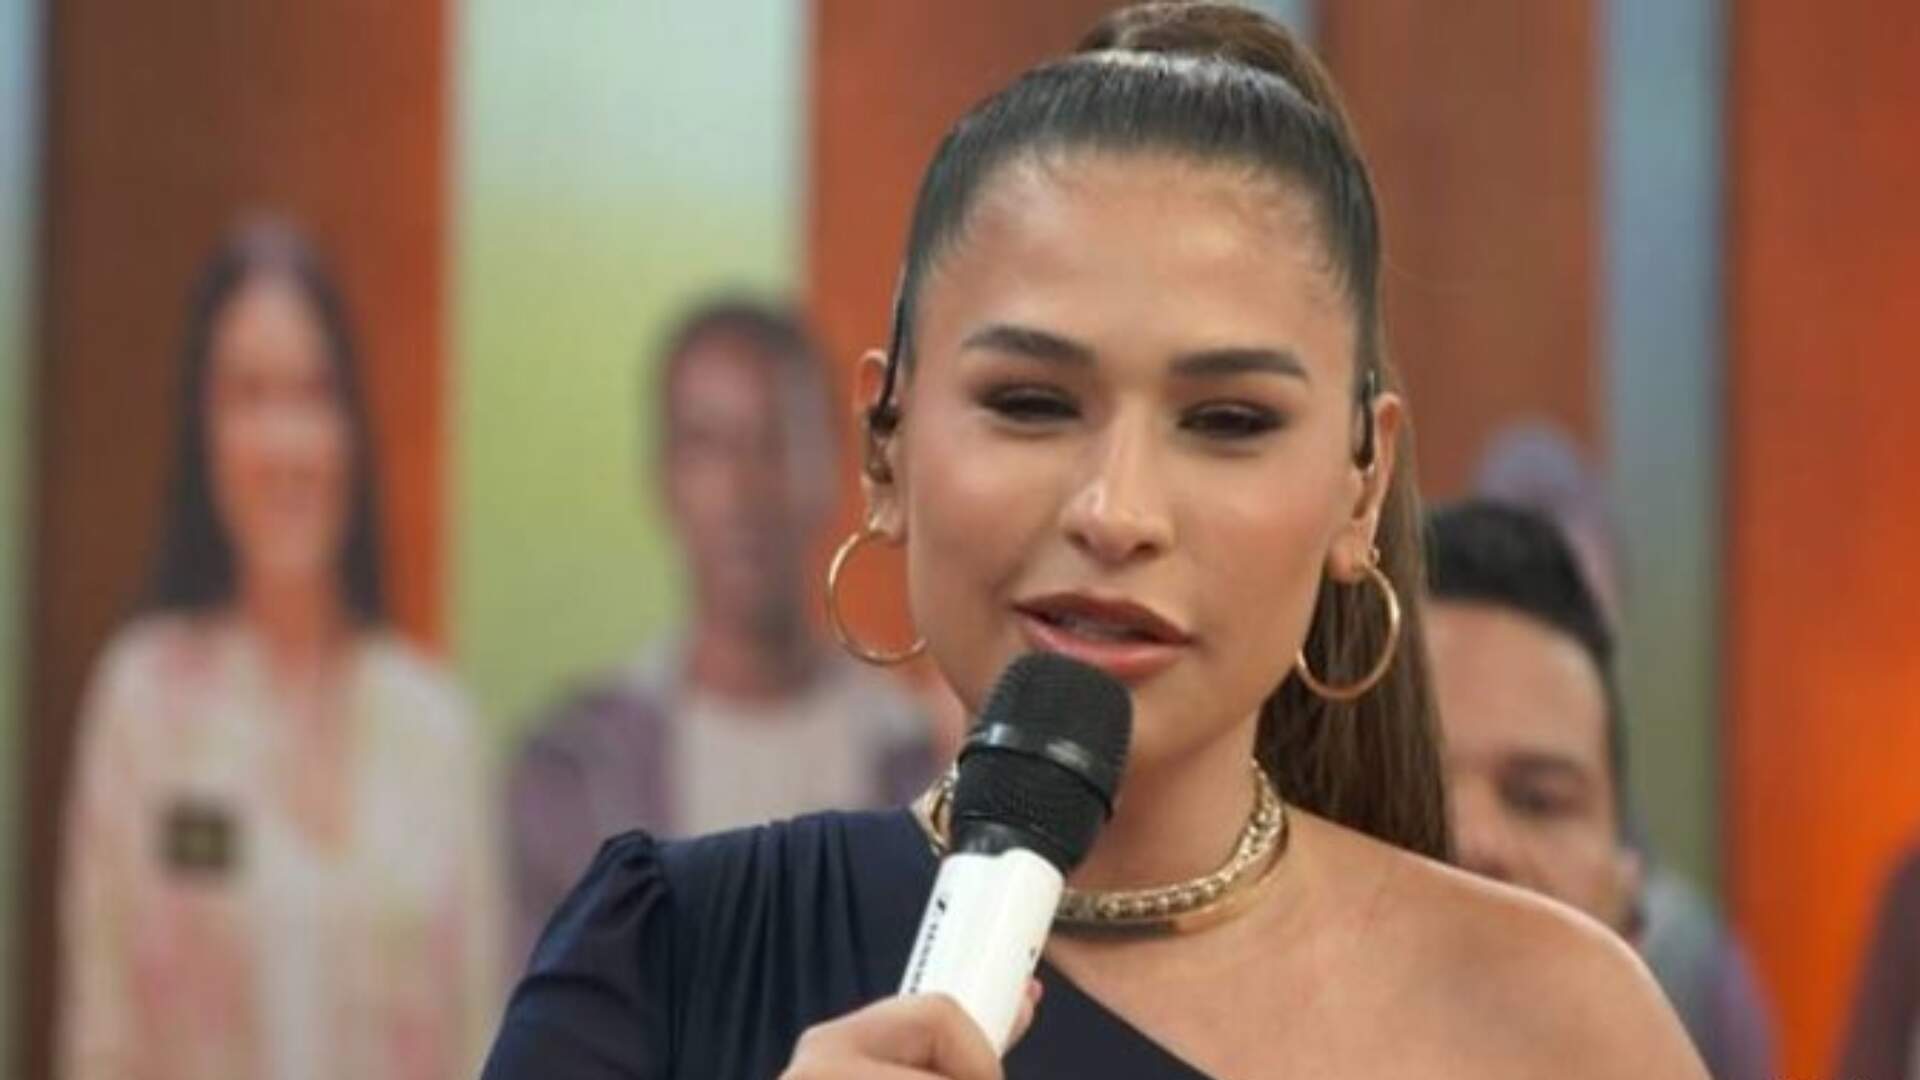 No Encontro, Simone Mendes tira sarro sobre separação de Lucas Lima e Sandy: “Coloca na terapia de casal” - Metropolitana FM